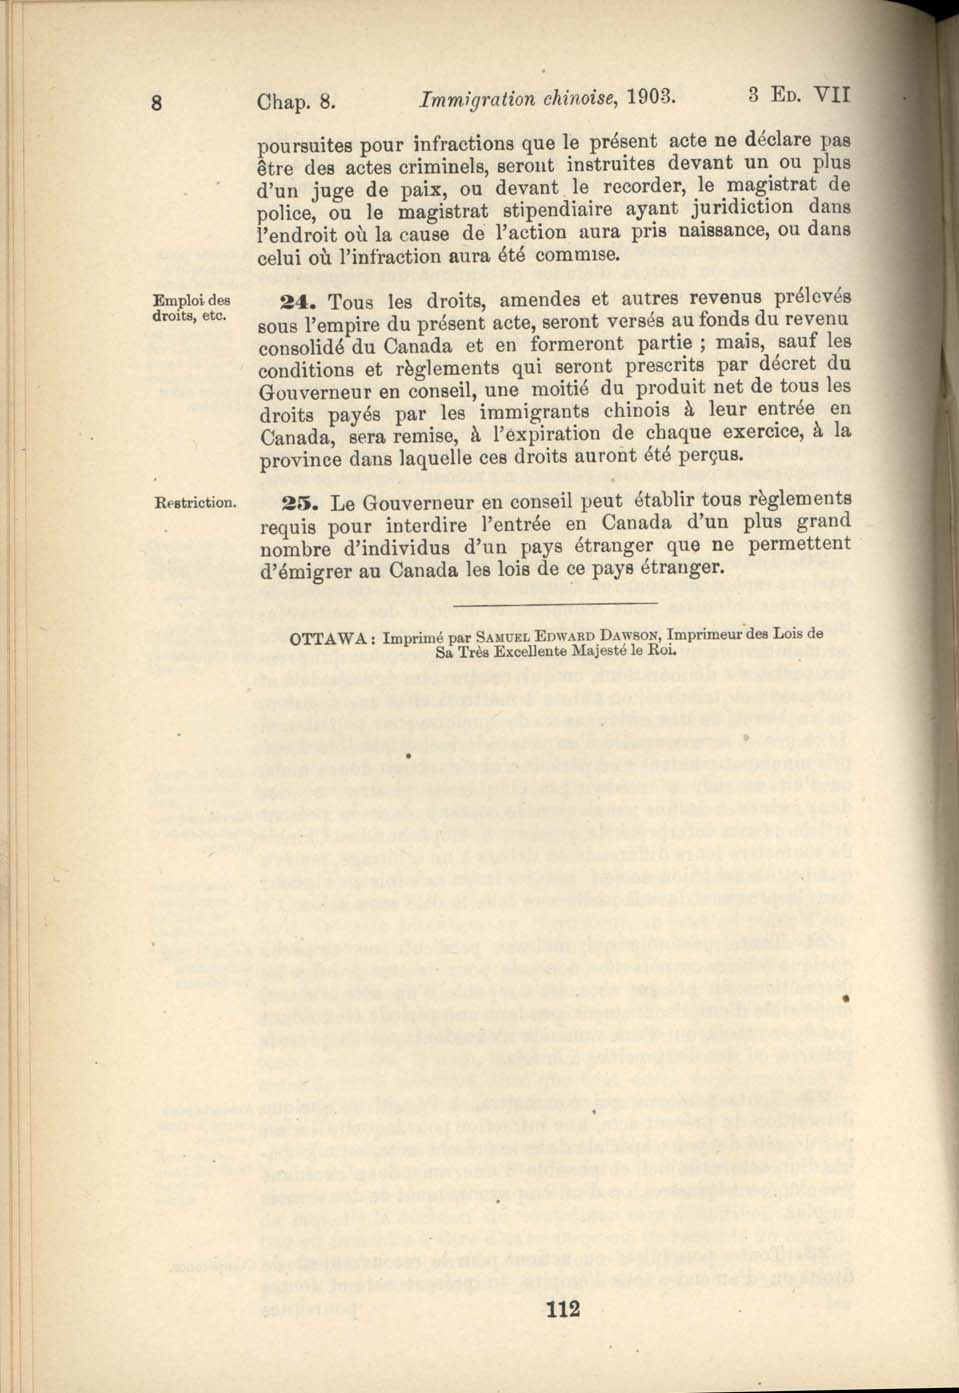 Chap. 8 Page 112 Acte de l’immigration chinoise, 1885 Amendment 1903